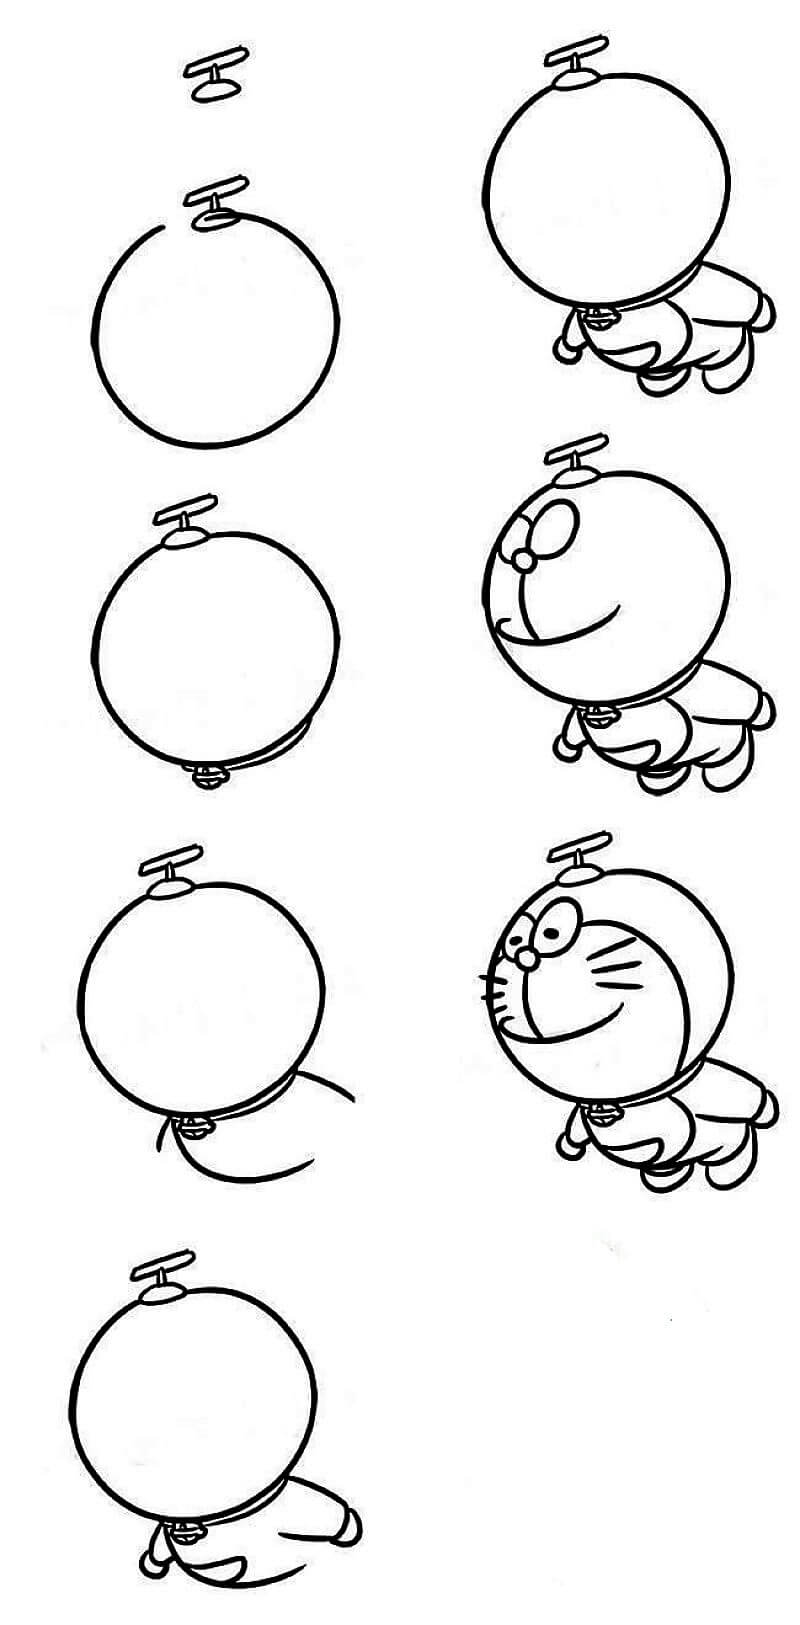 Doraemon fliegt zeichnen ideen